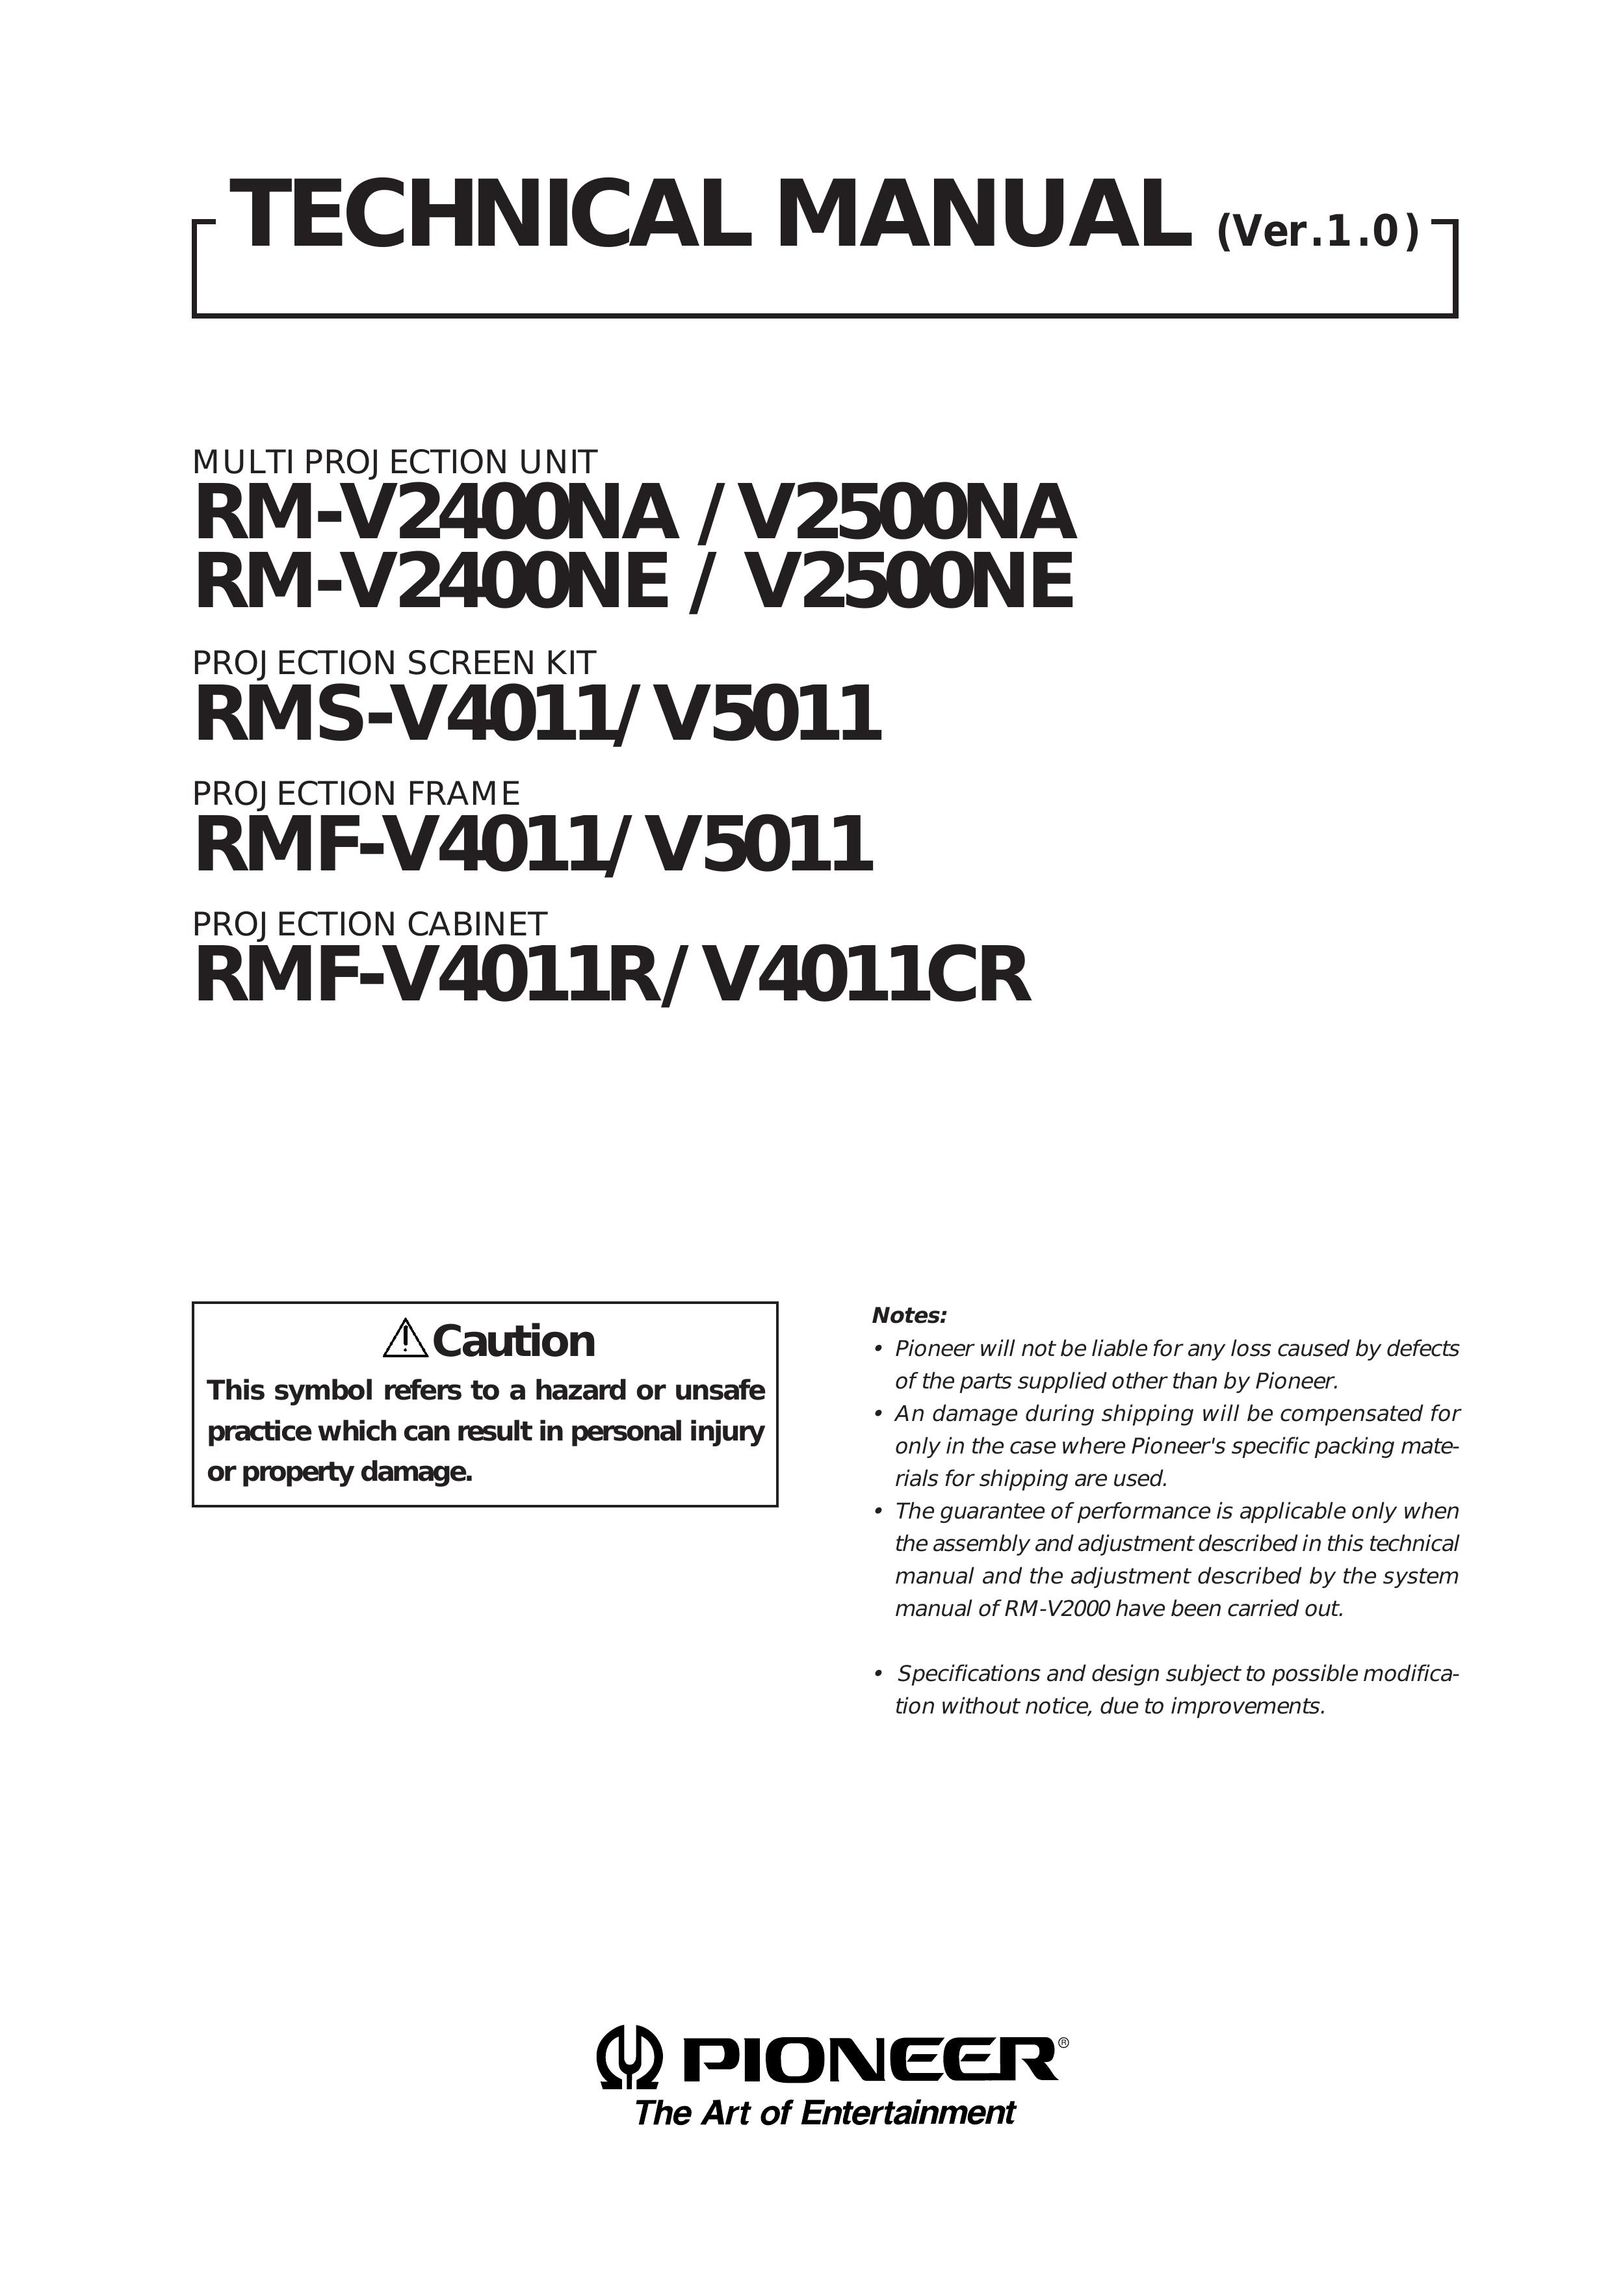 Pioneer V2500NE Projector User Manual